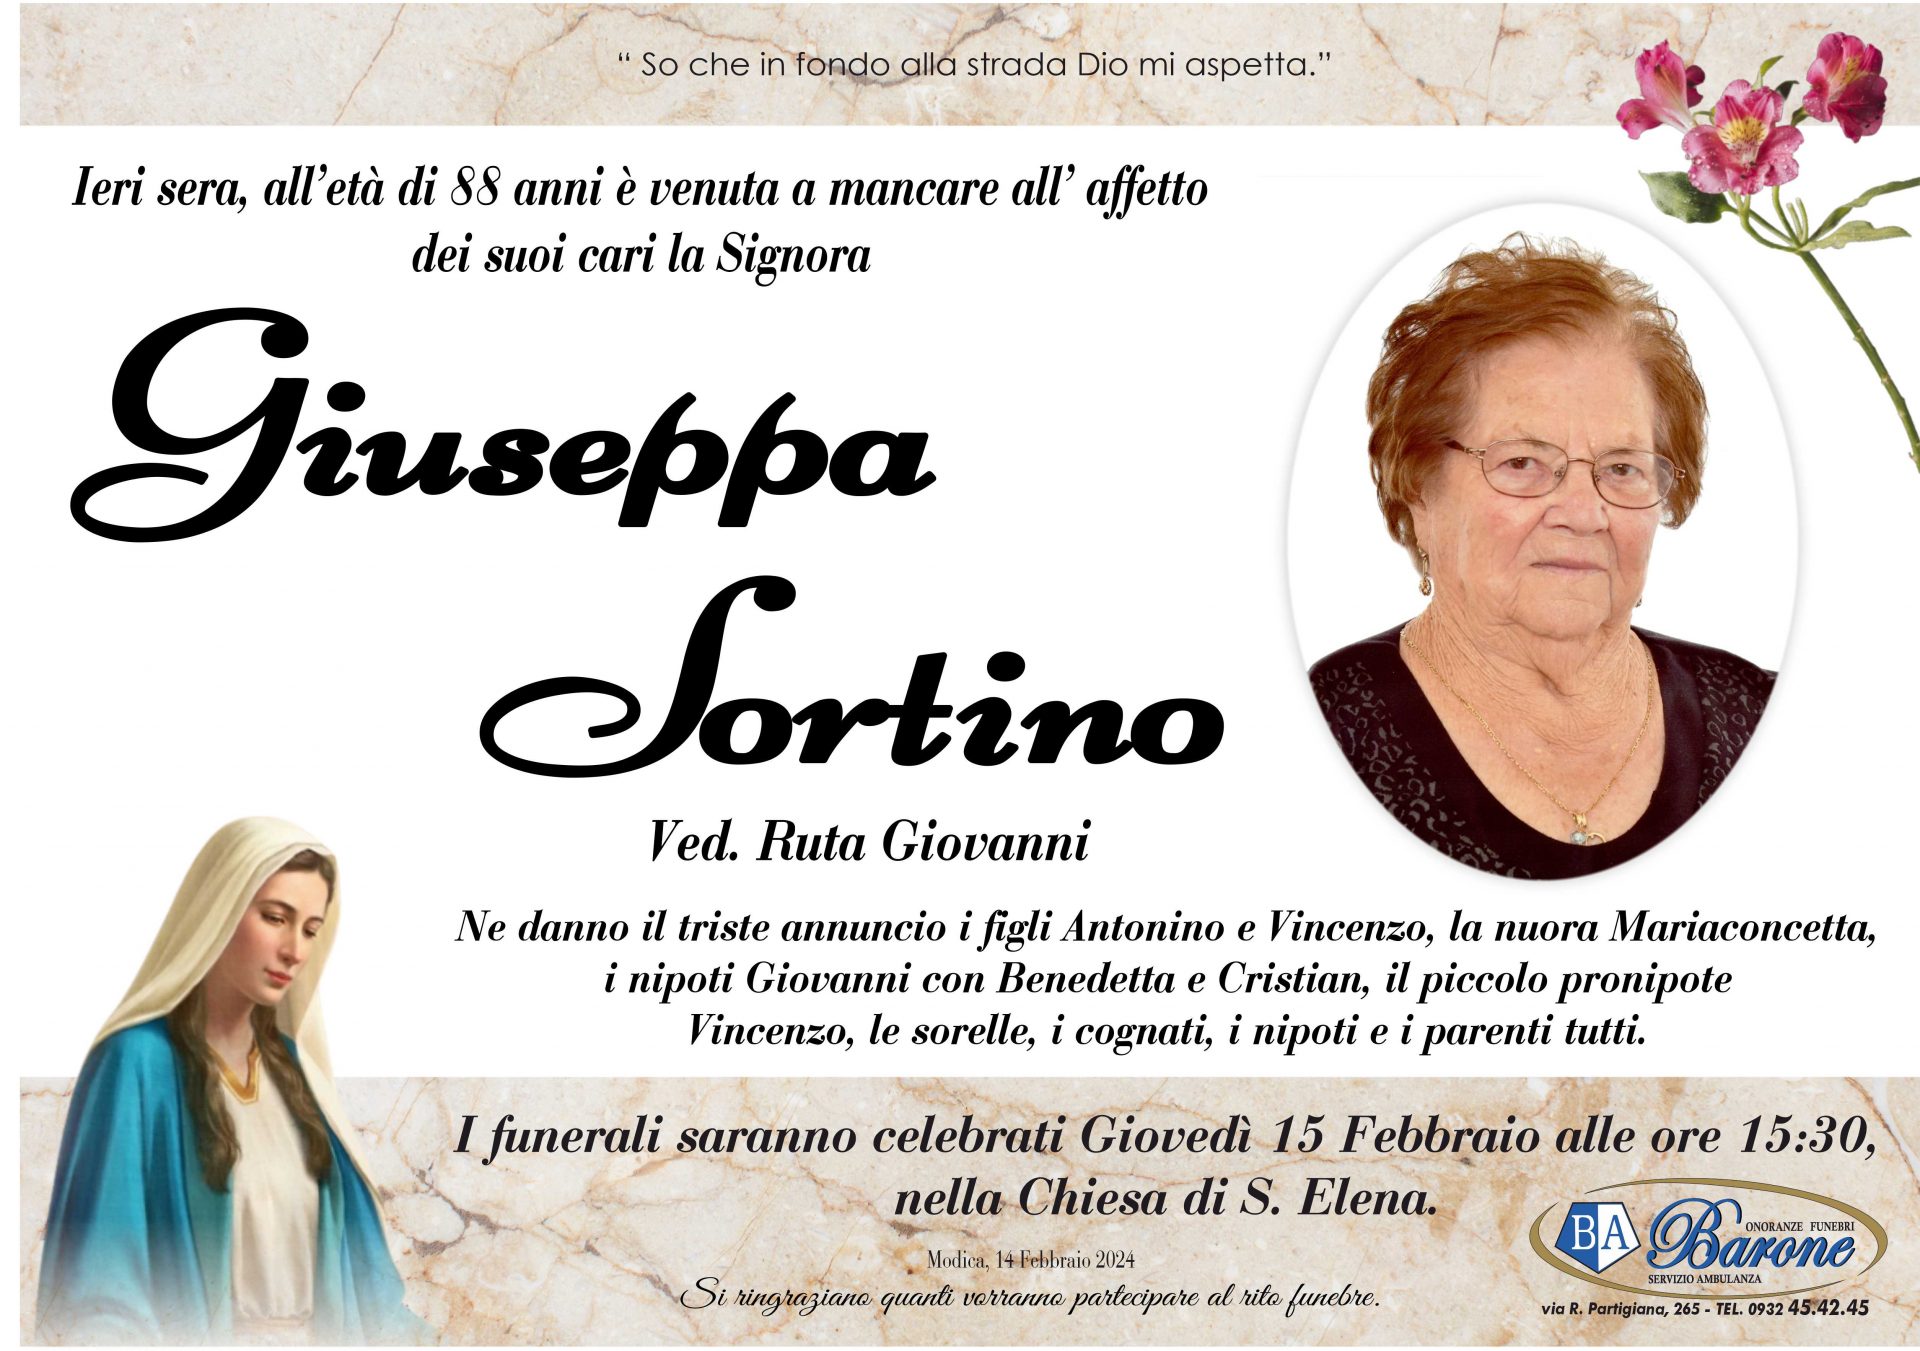 Giuseppa Sortino